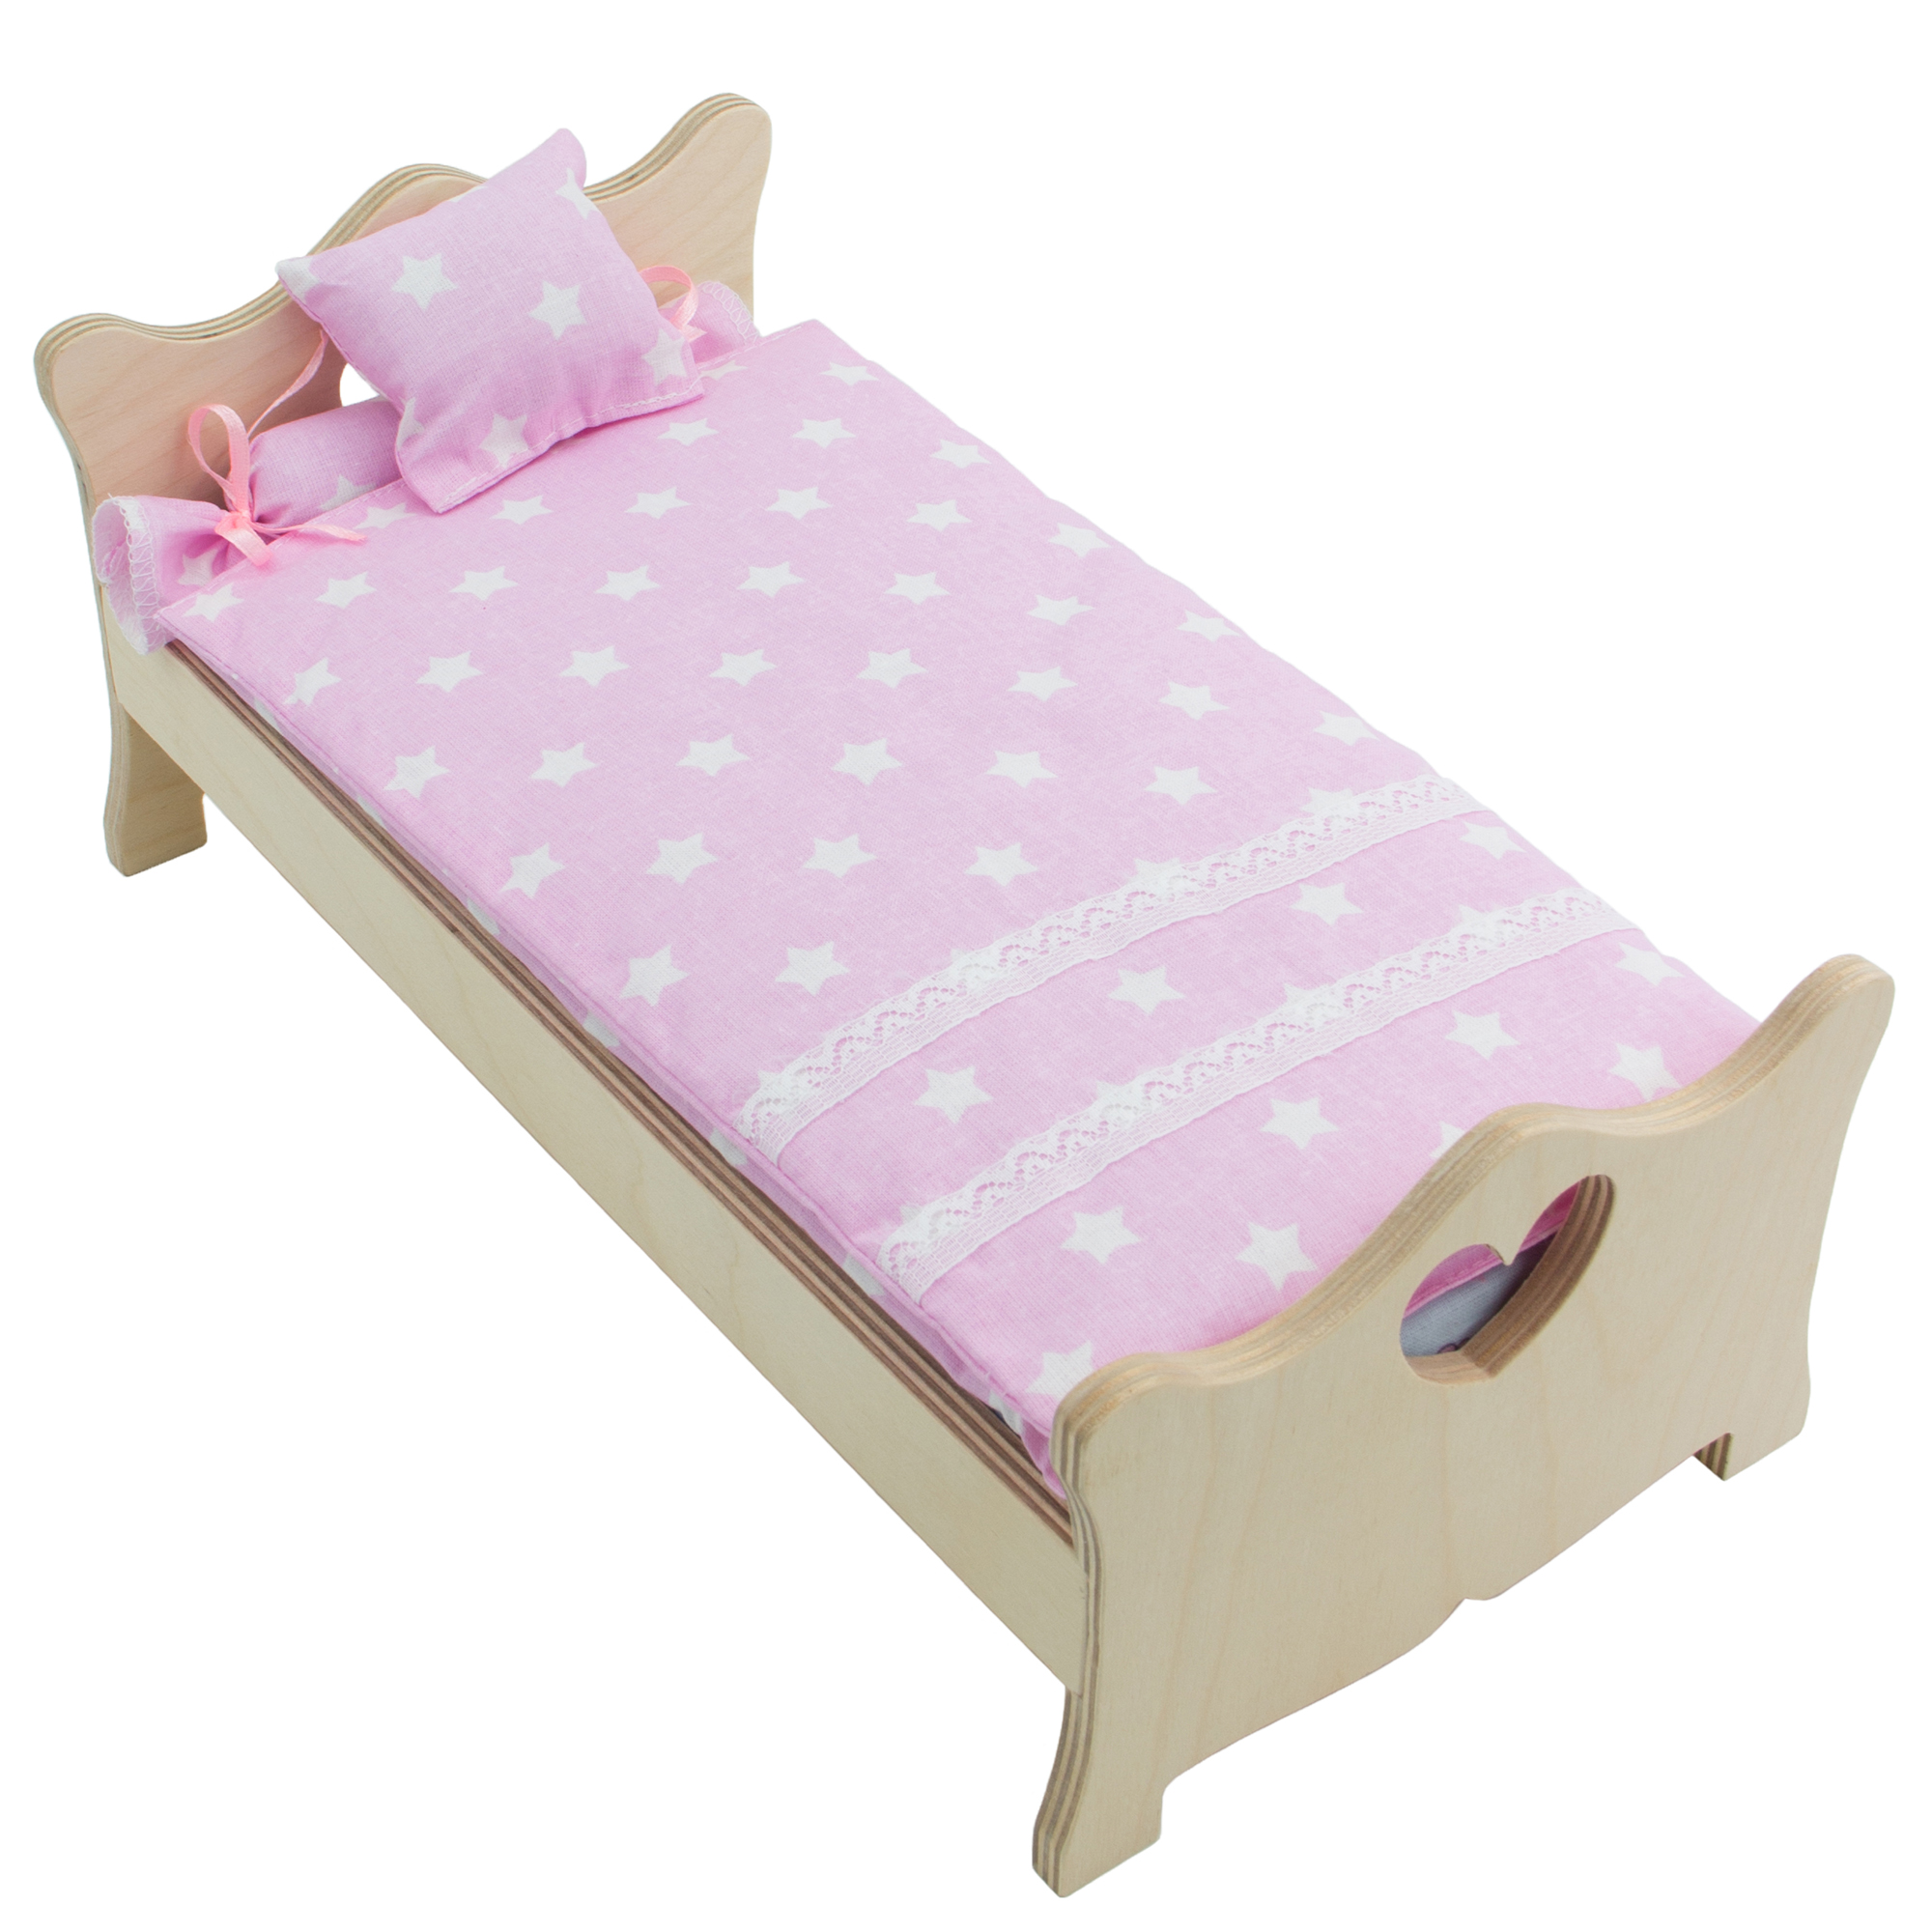 Комлпект постельного белья Модница для куклы 29 см светло-розовый 2002светло-розовый - фото 5